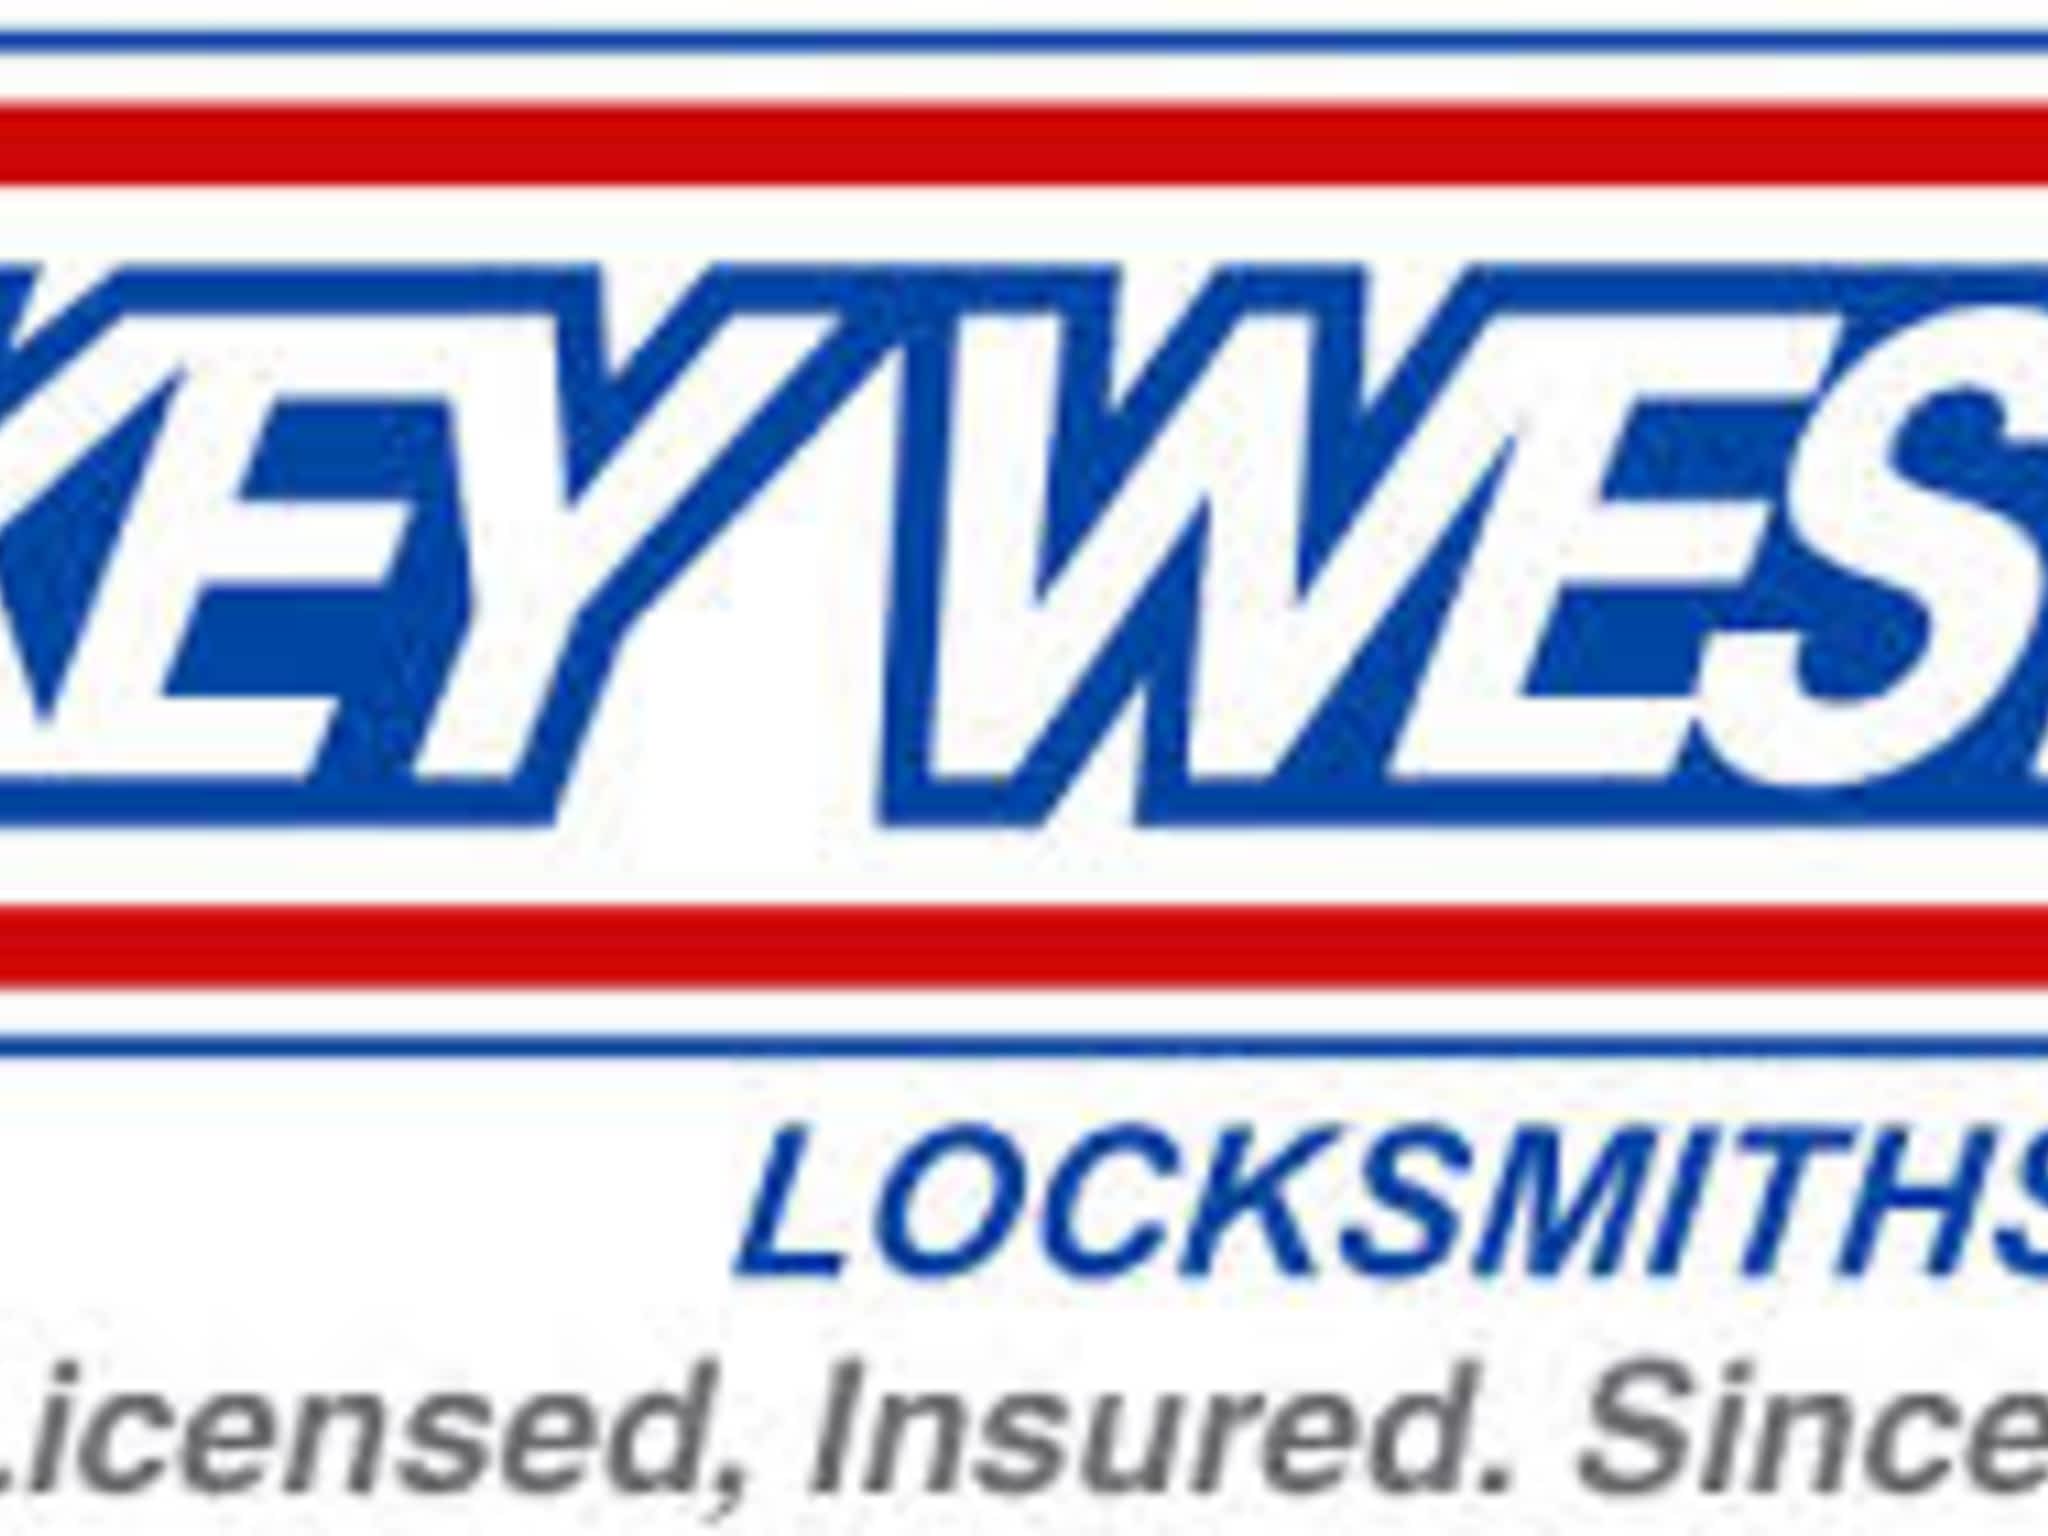 photo Key West Locksmiths Ltd